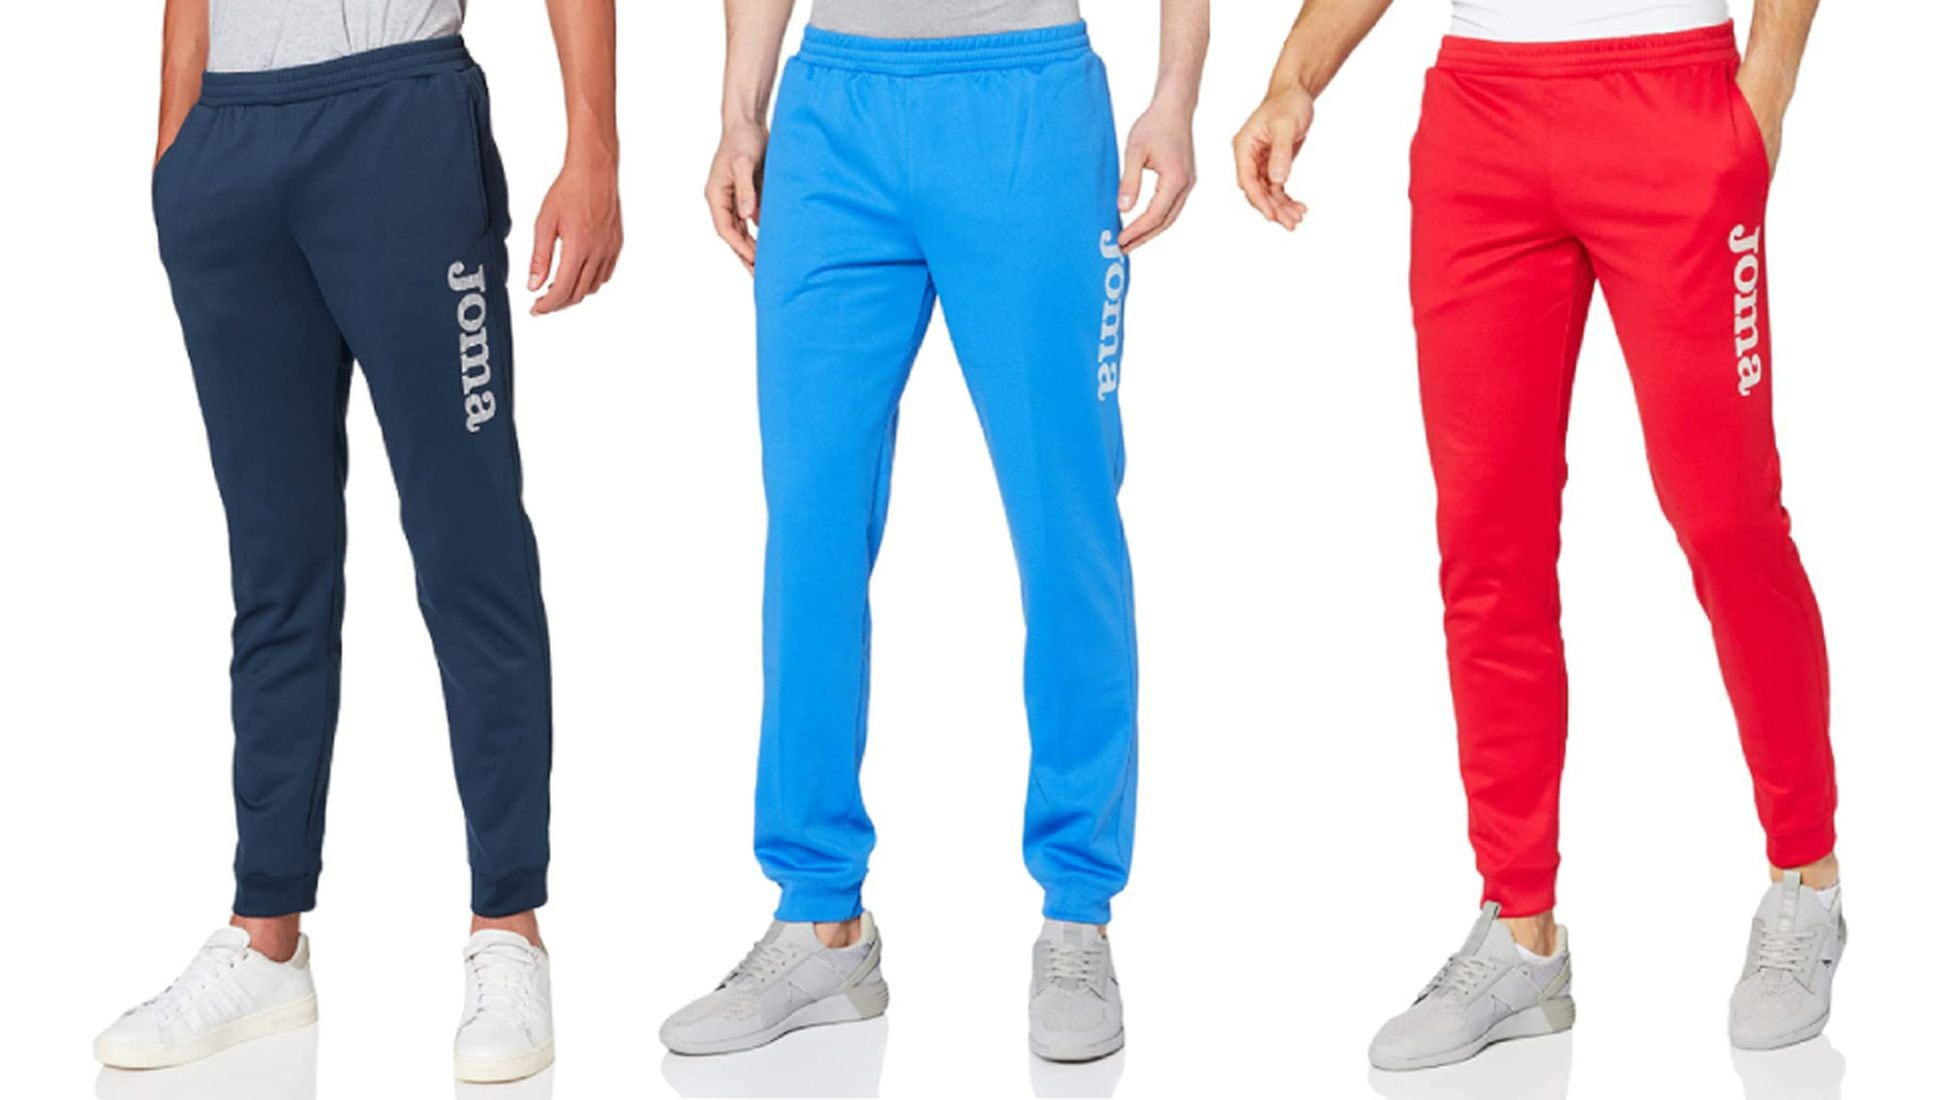 cinco pantalones deportivos para hombre vendidos en Amazon (con hasta valoraciones) | Escaparate: compras y ofertas | EL PAÍS